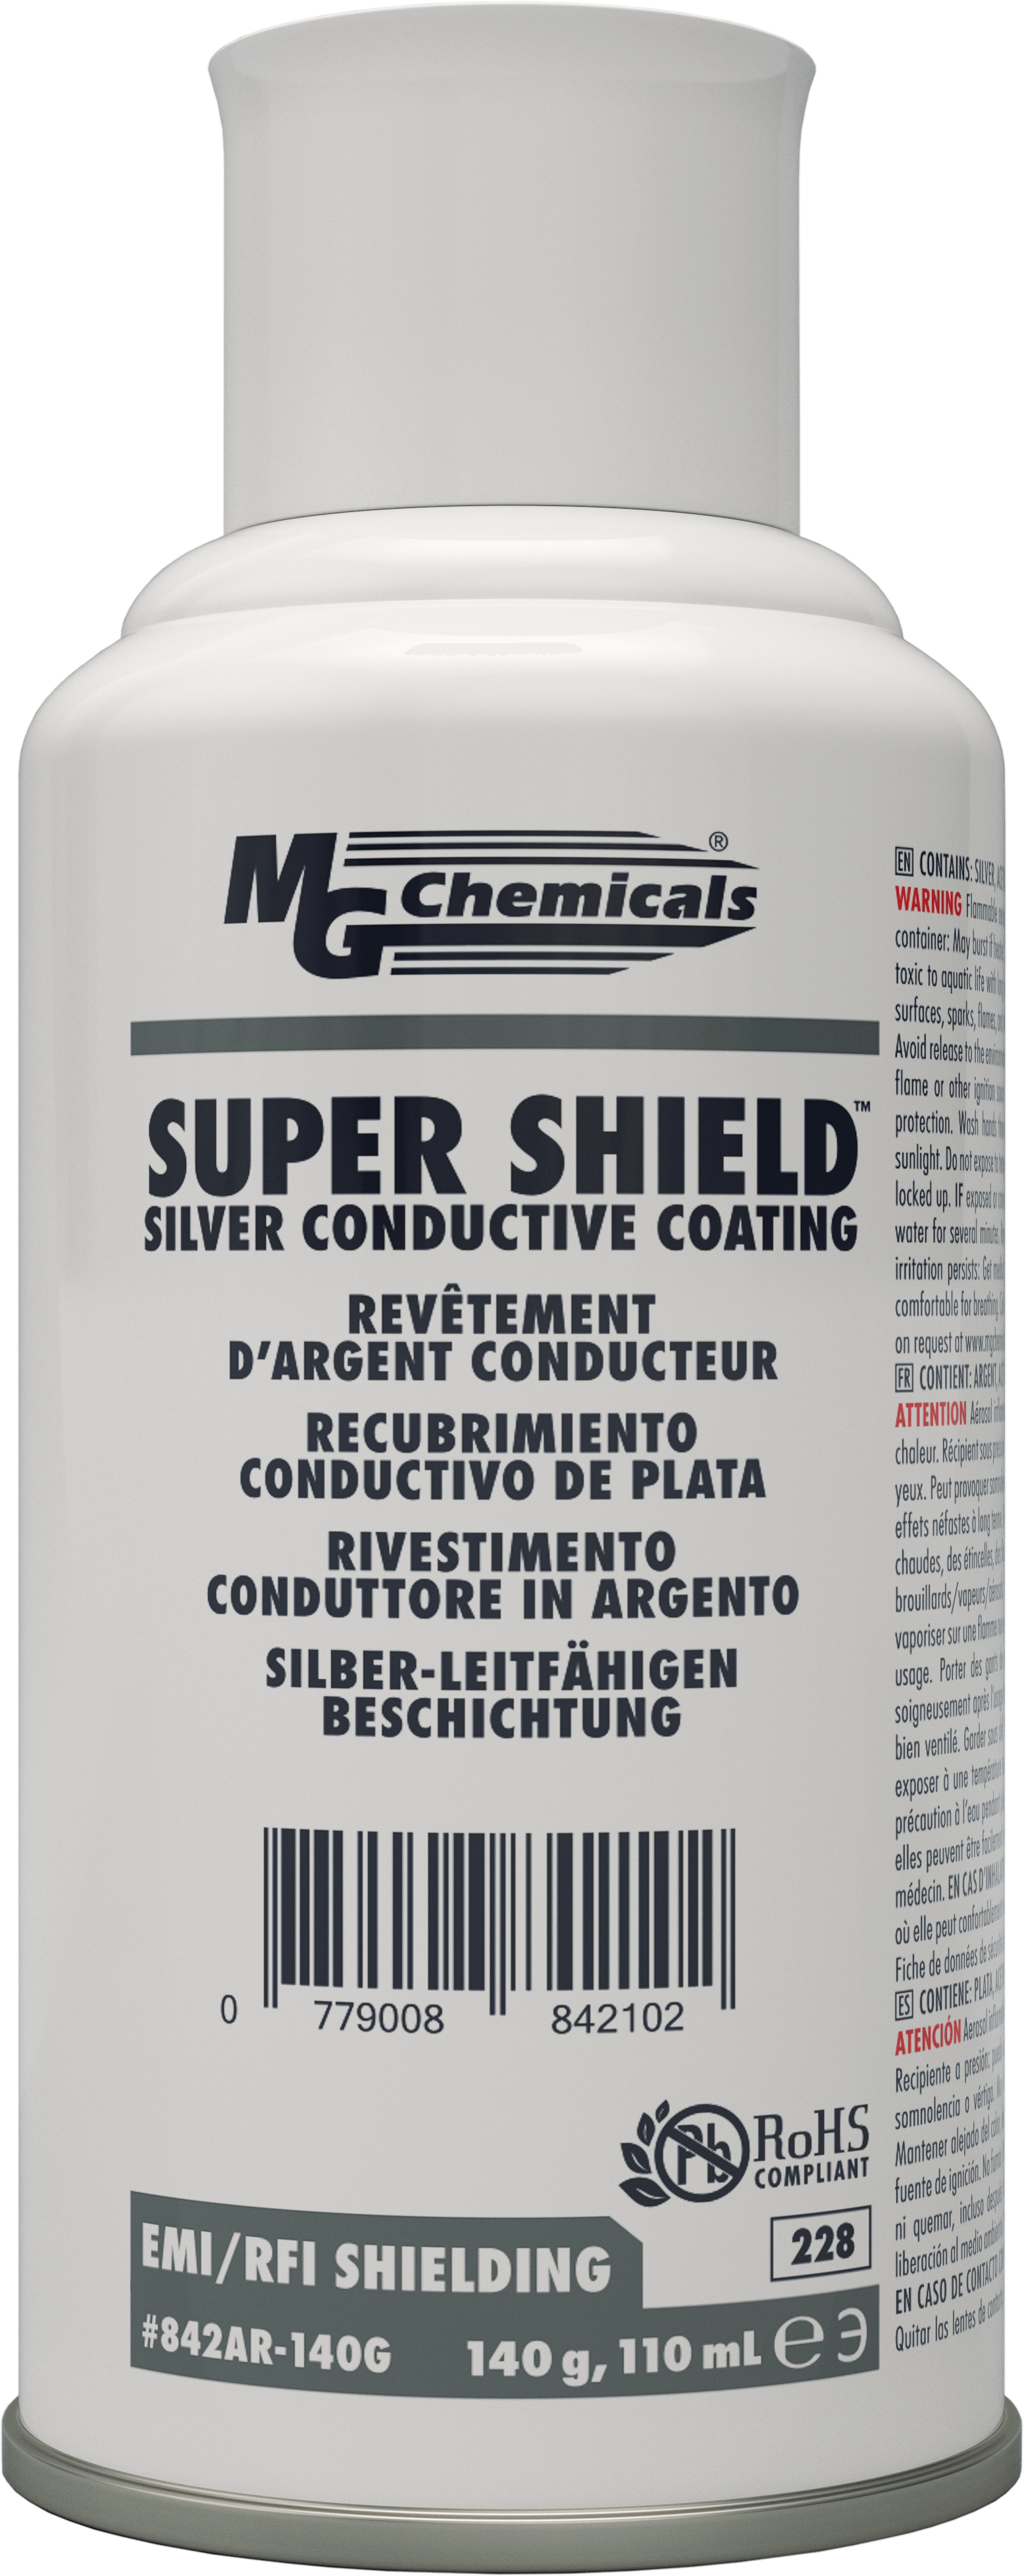 SUPER SHIELD Silver Conductive Coating